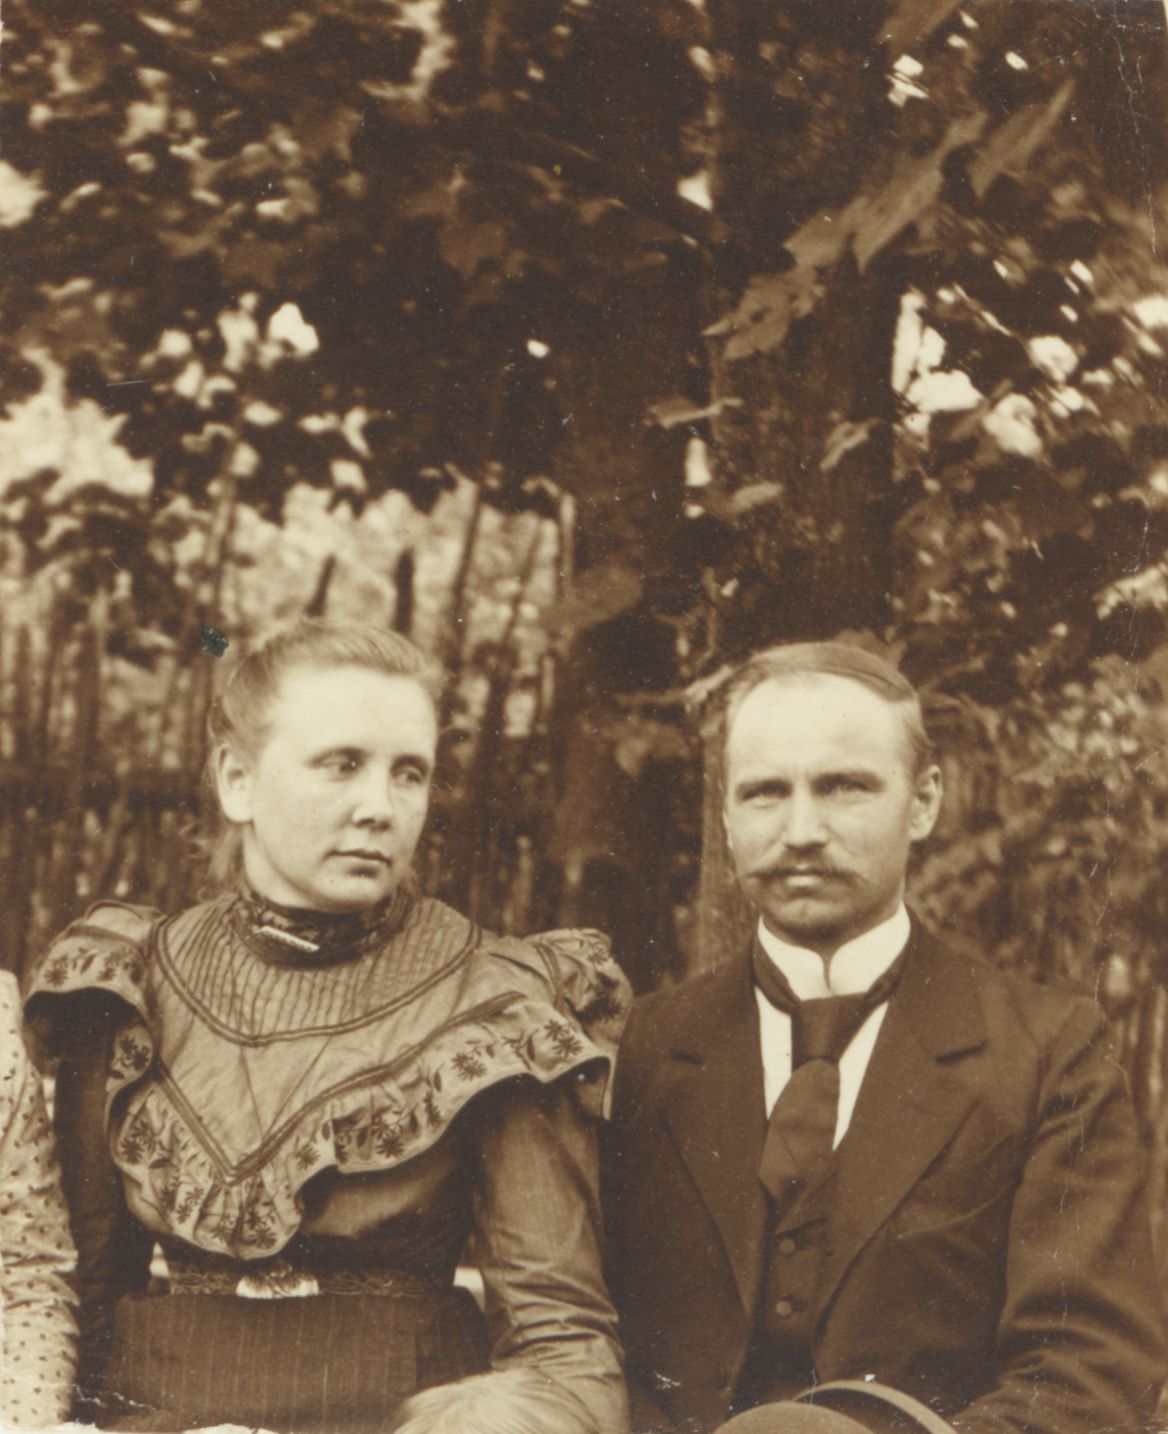 Mihkel Kampmaa's wife in 1903?